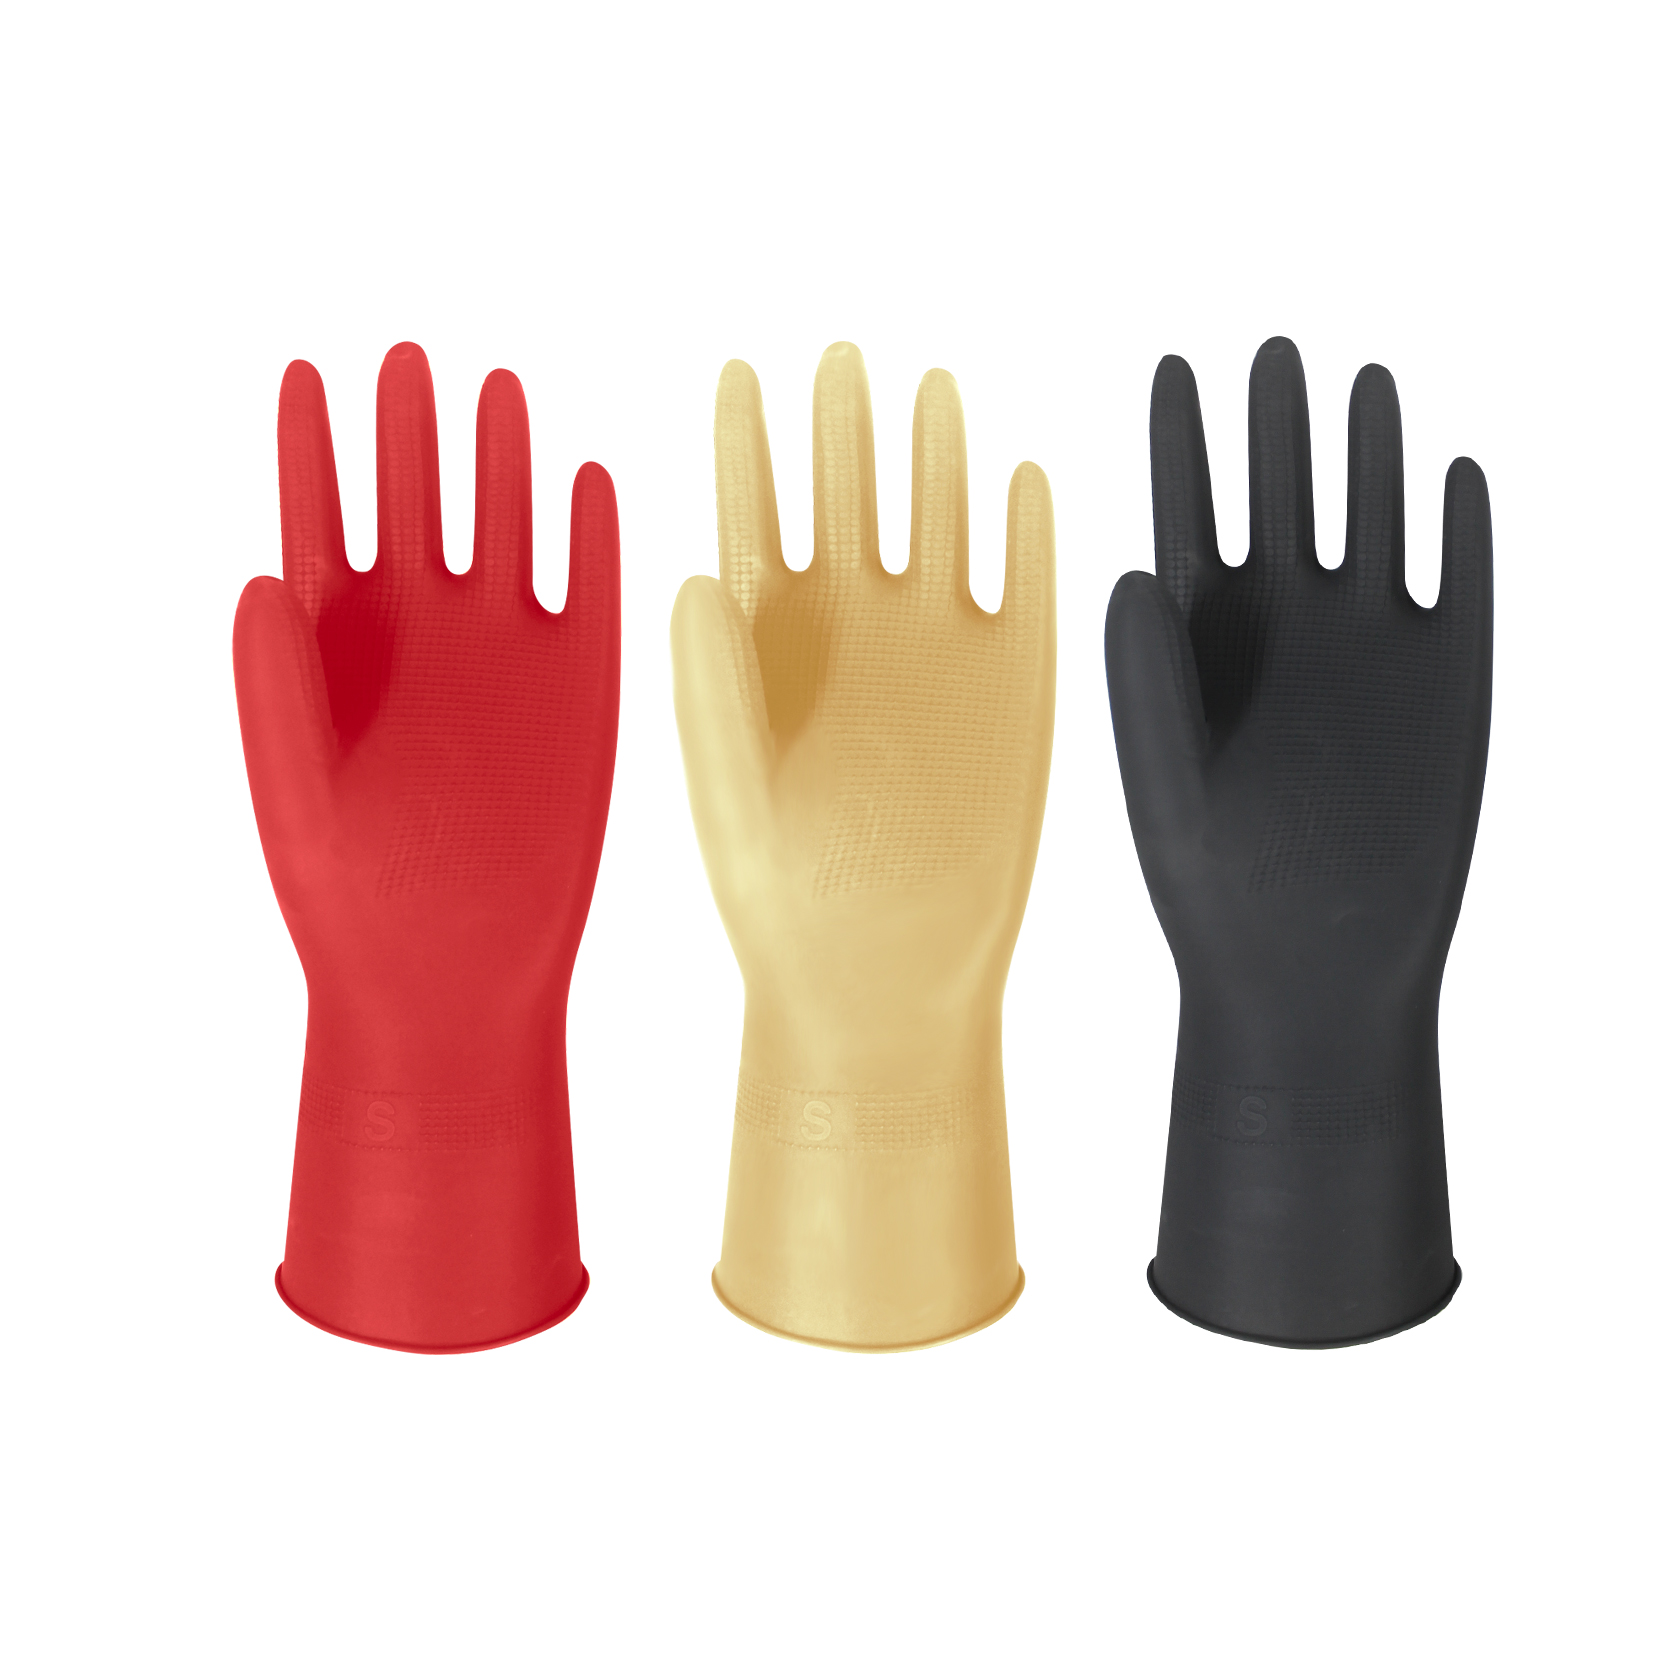 Latex Household Rolled Cuff Gloves ស្រោមដៃកៅស៊ូខ្លីសម្រាប់សម្អាត ស្រោមដៃលាងចាន